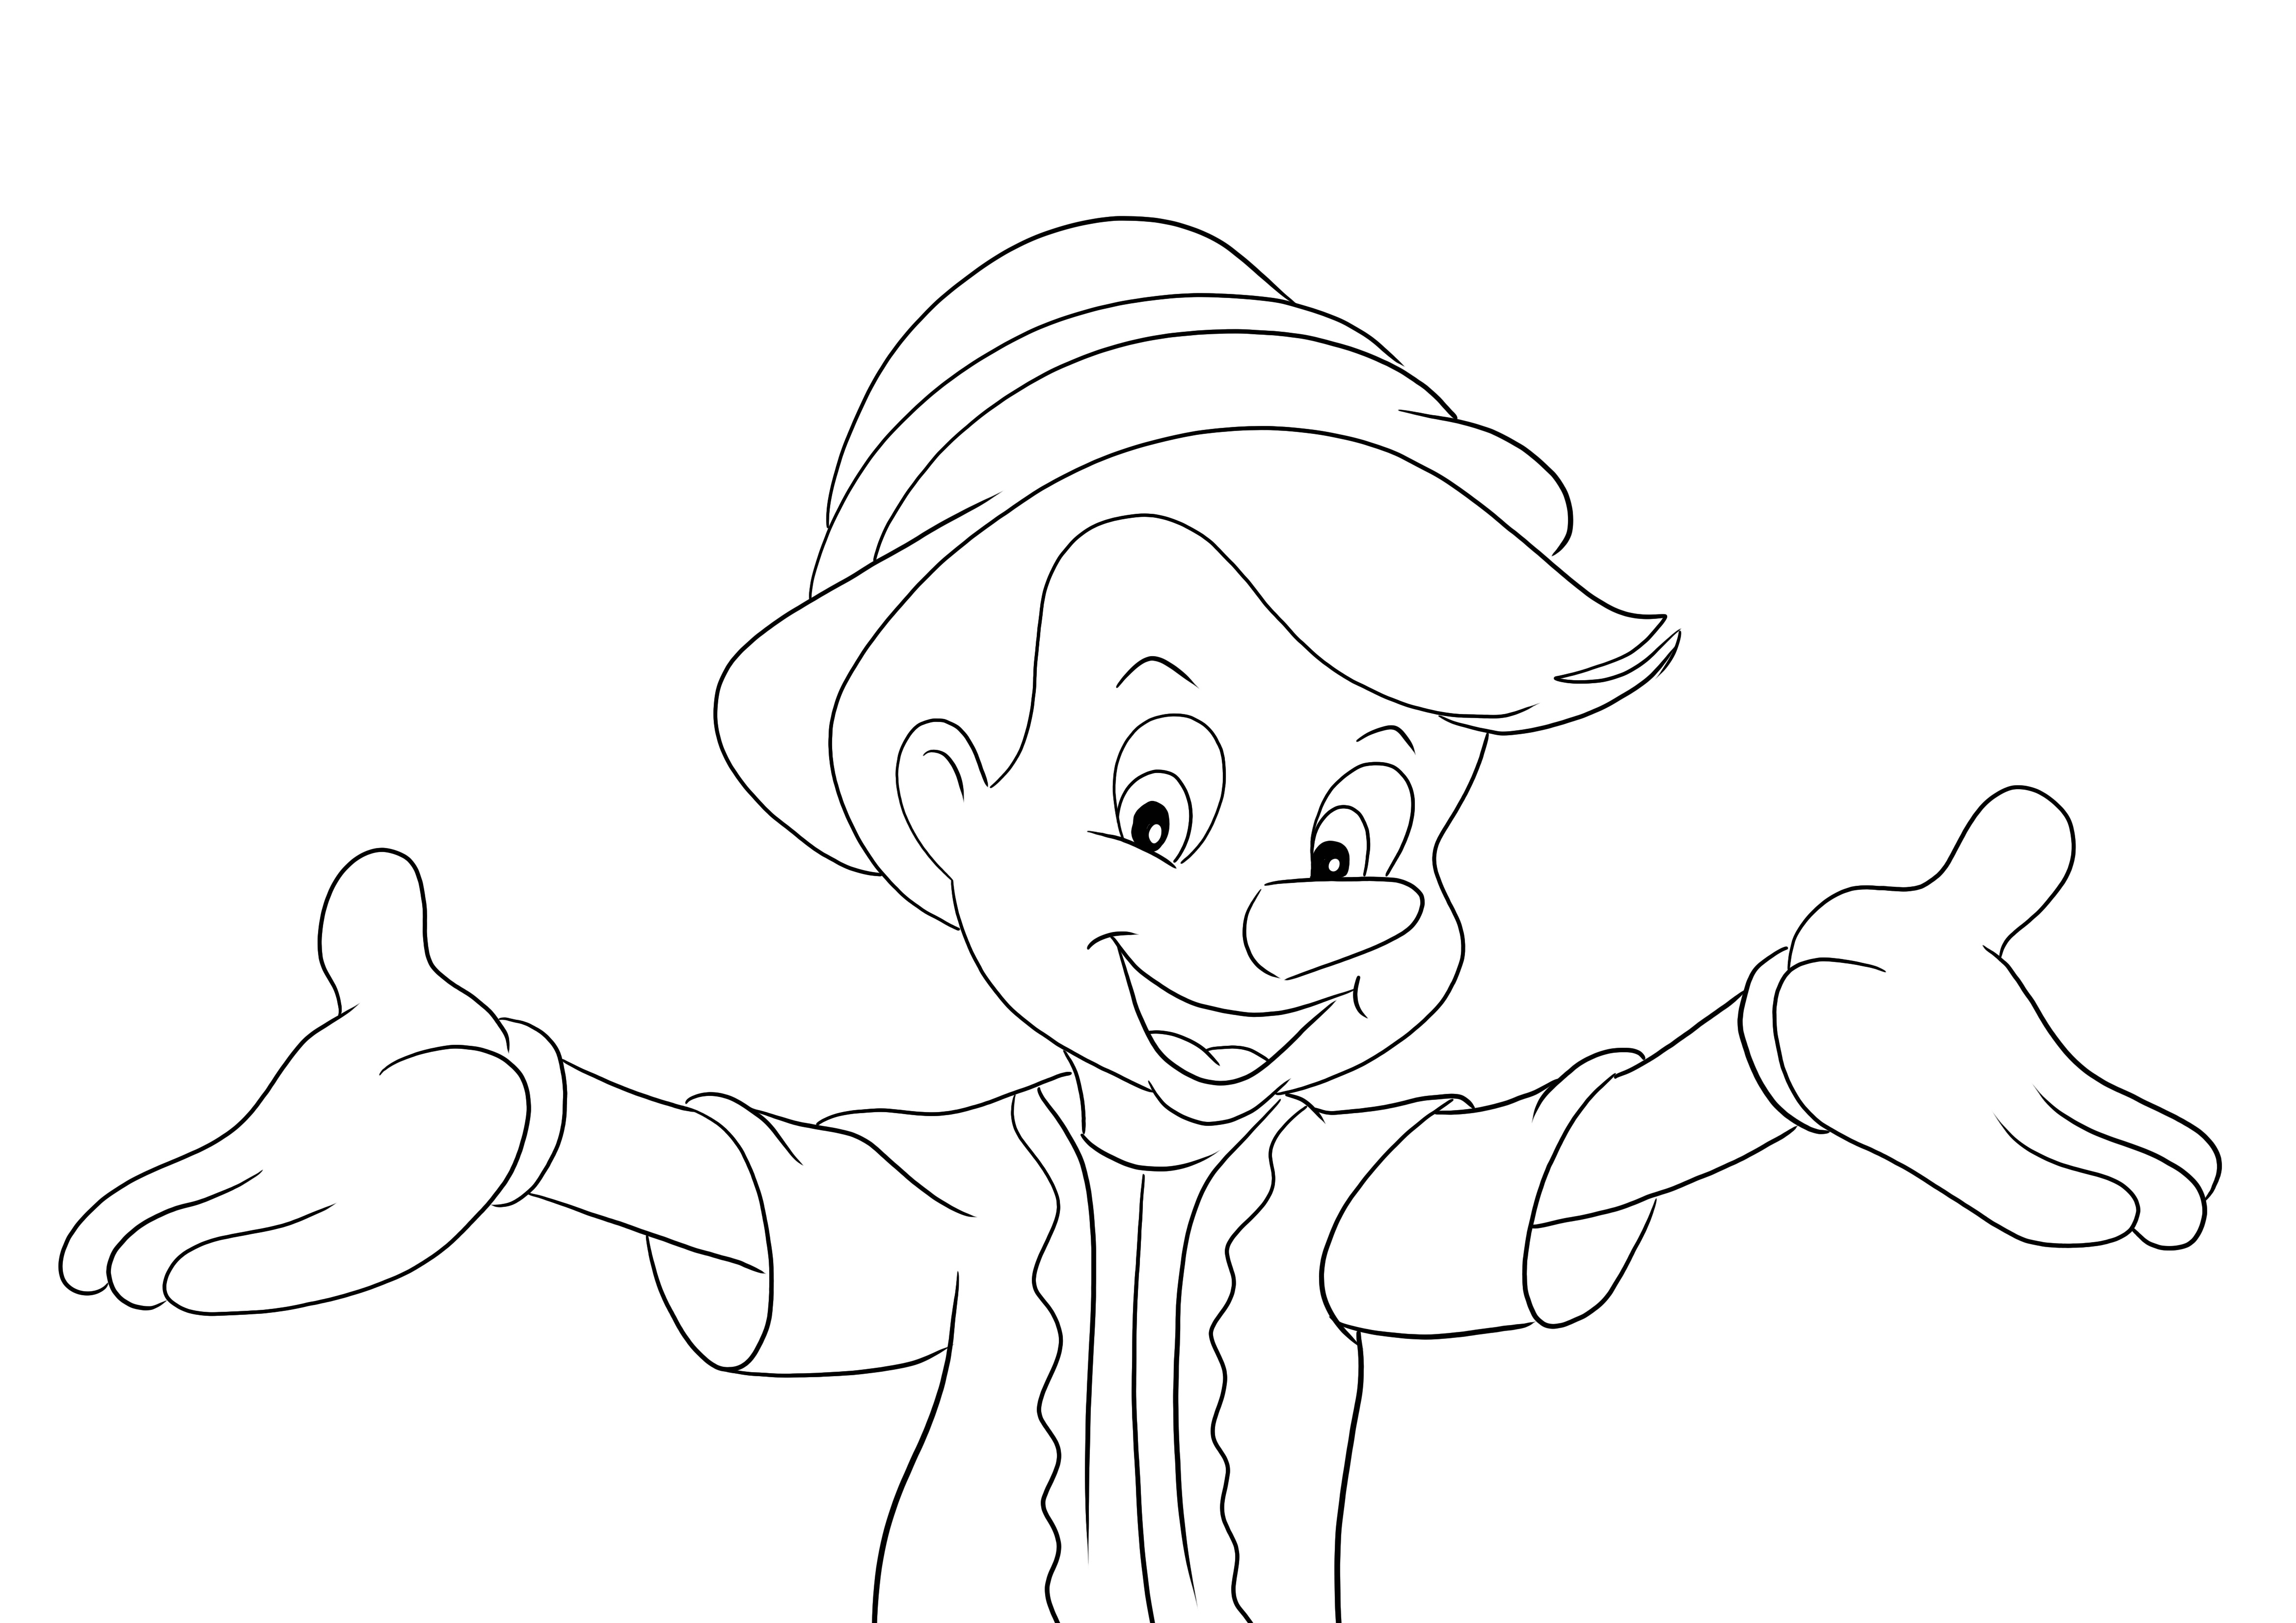 Pinocchio und offenes, freihändiges Bild zum Ausdrucken und Ausmalen für Kinder